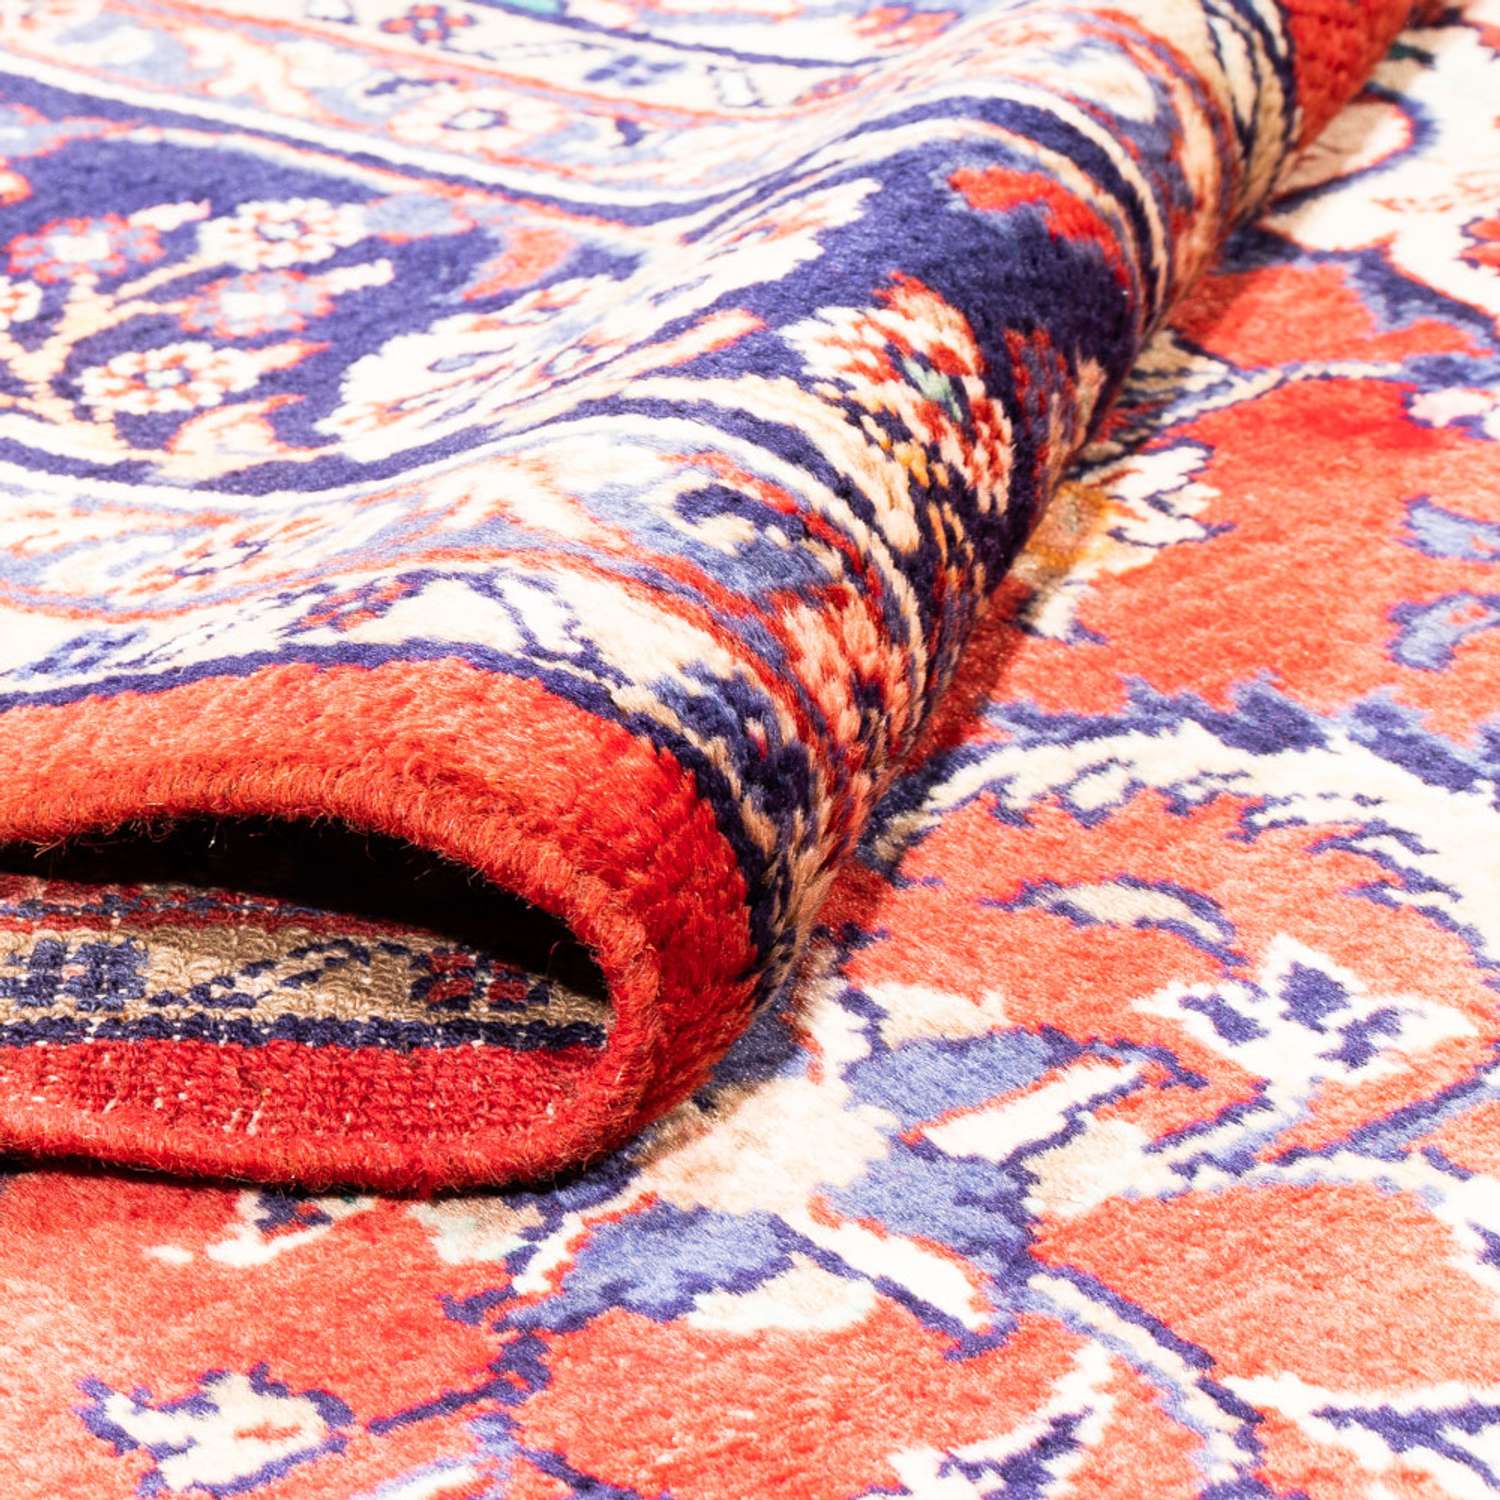 Persisk teppe - klassisk - 297 x 215 cm - rød